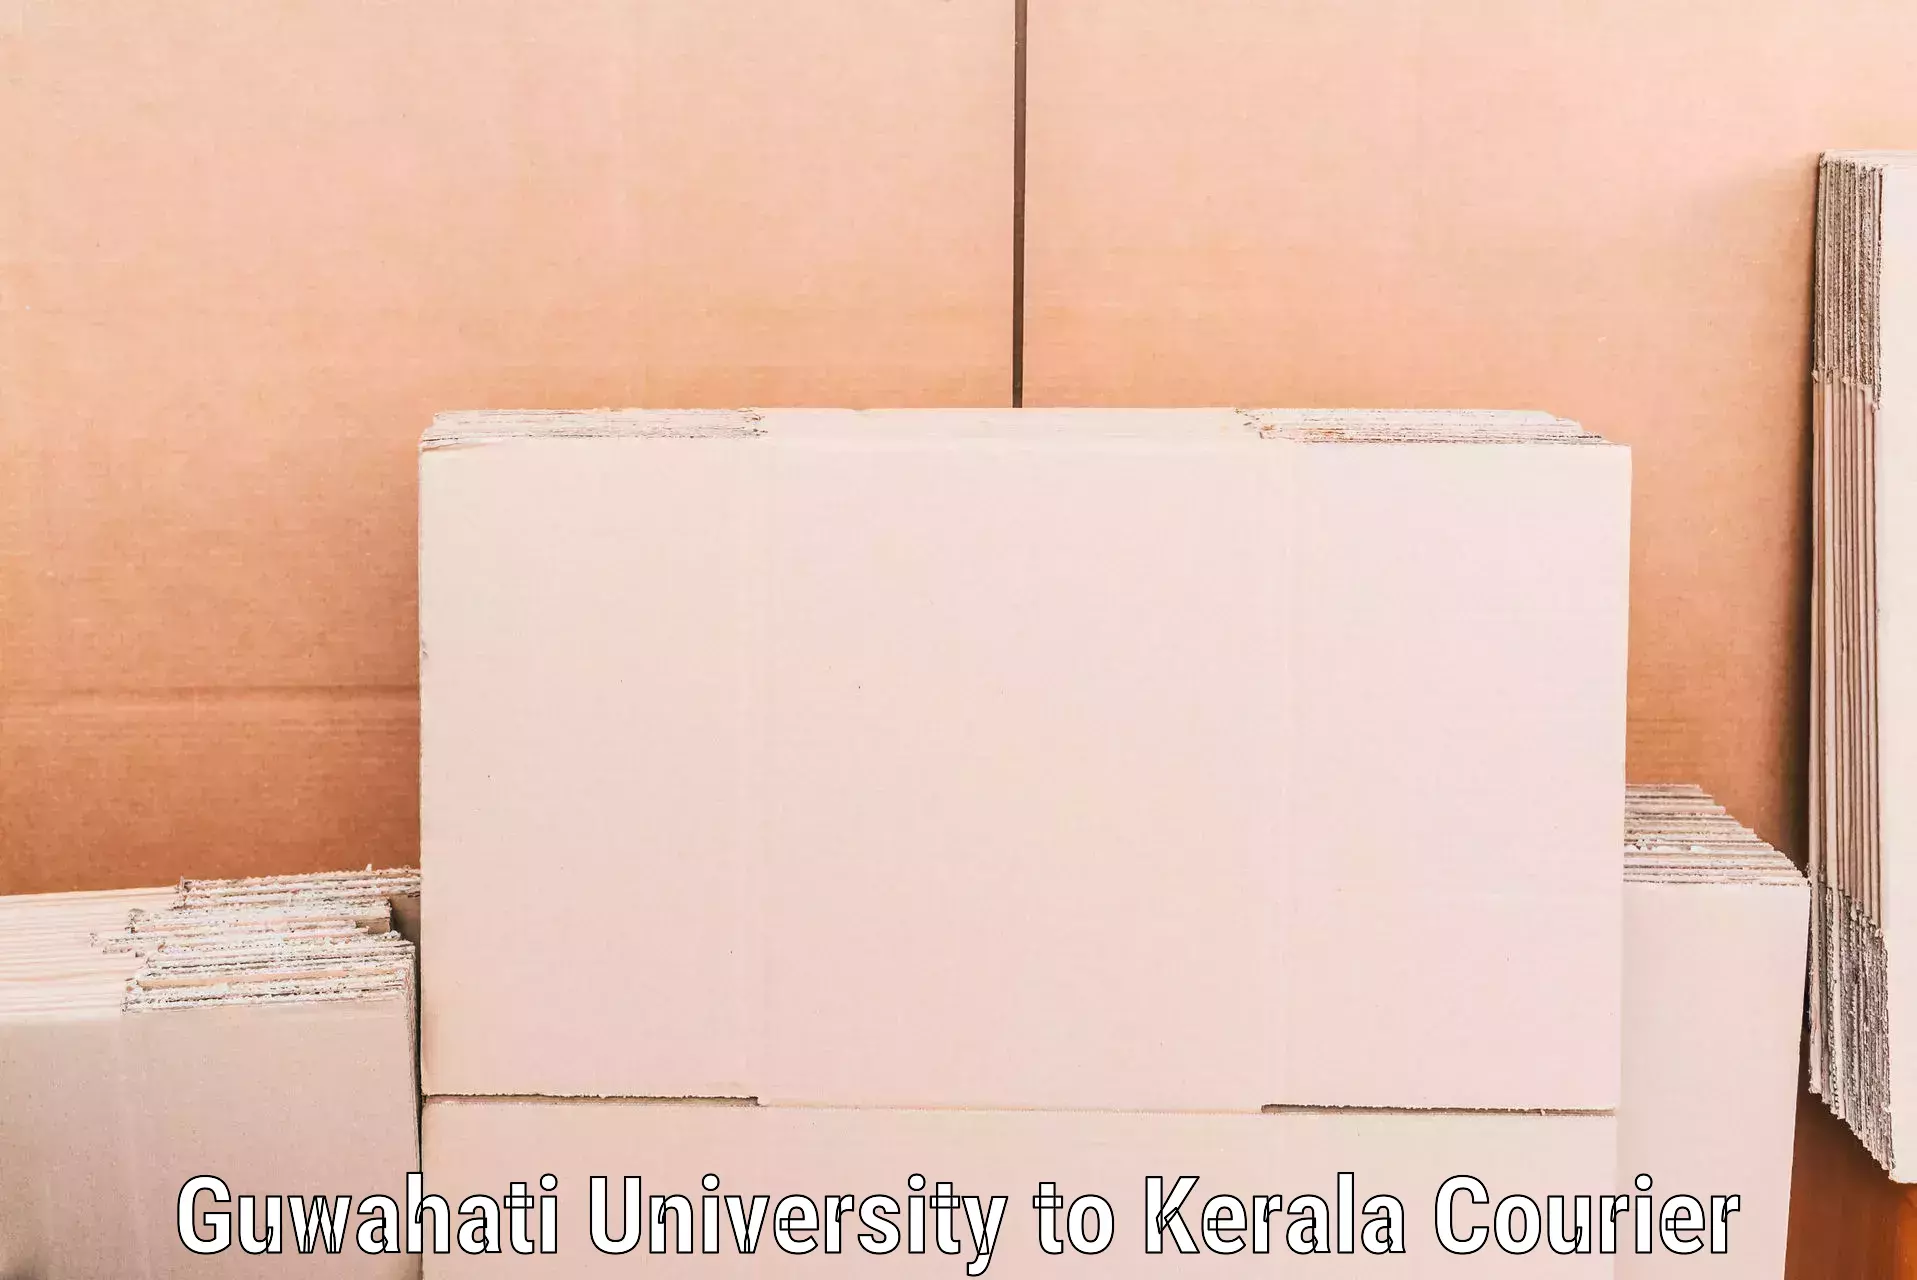 Tailored furniture transport Guwahati University to Kerala